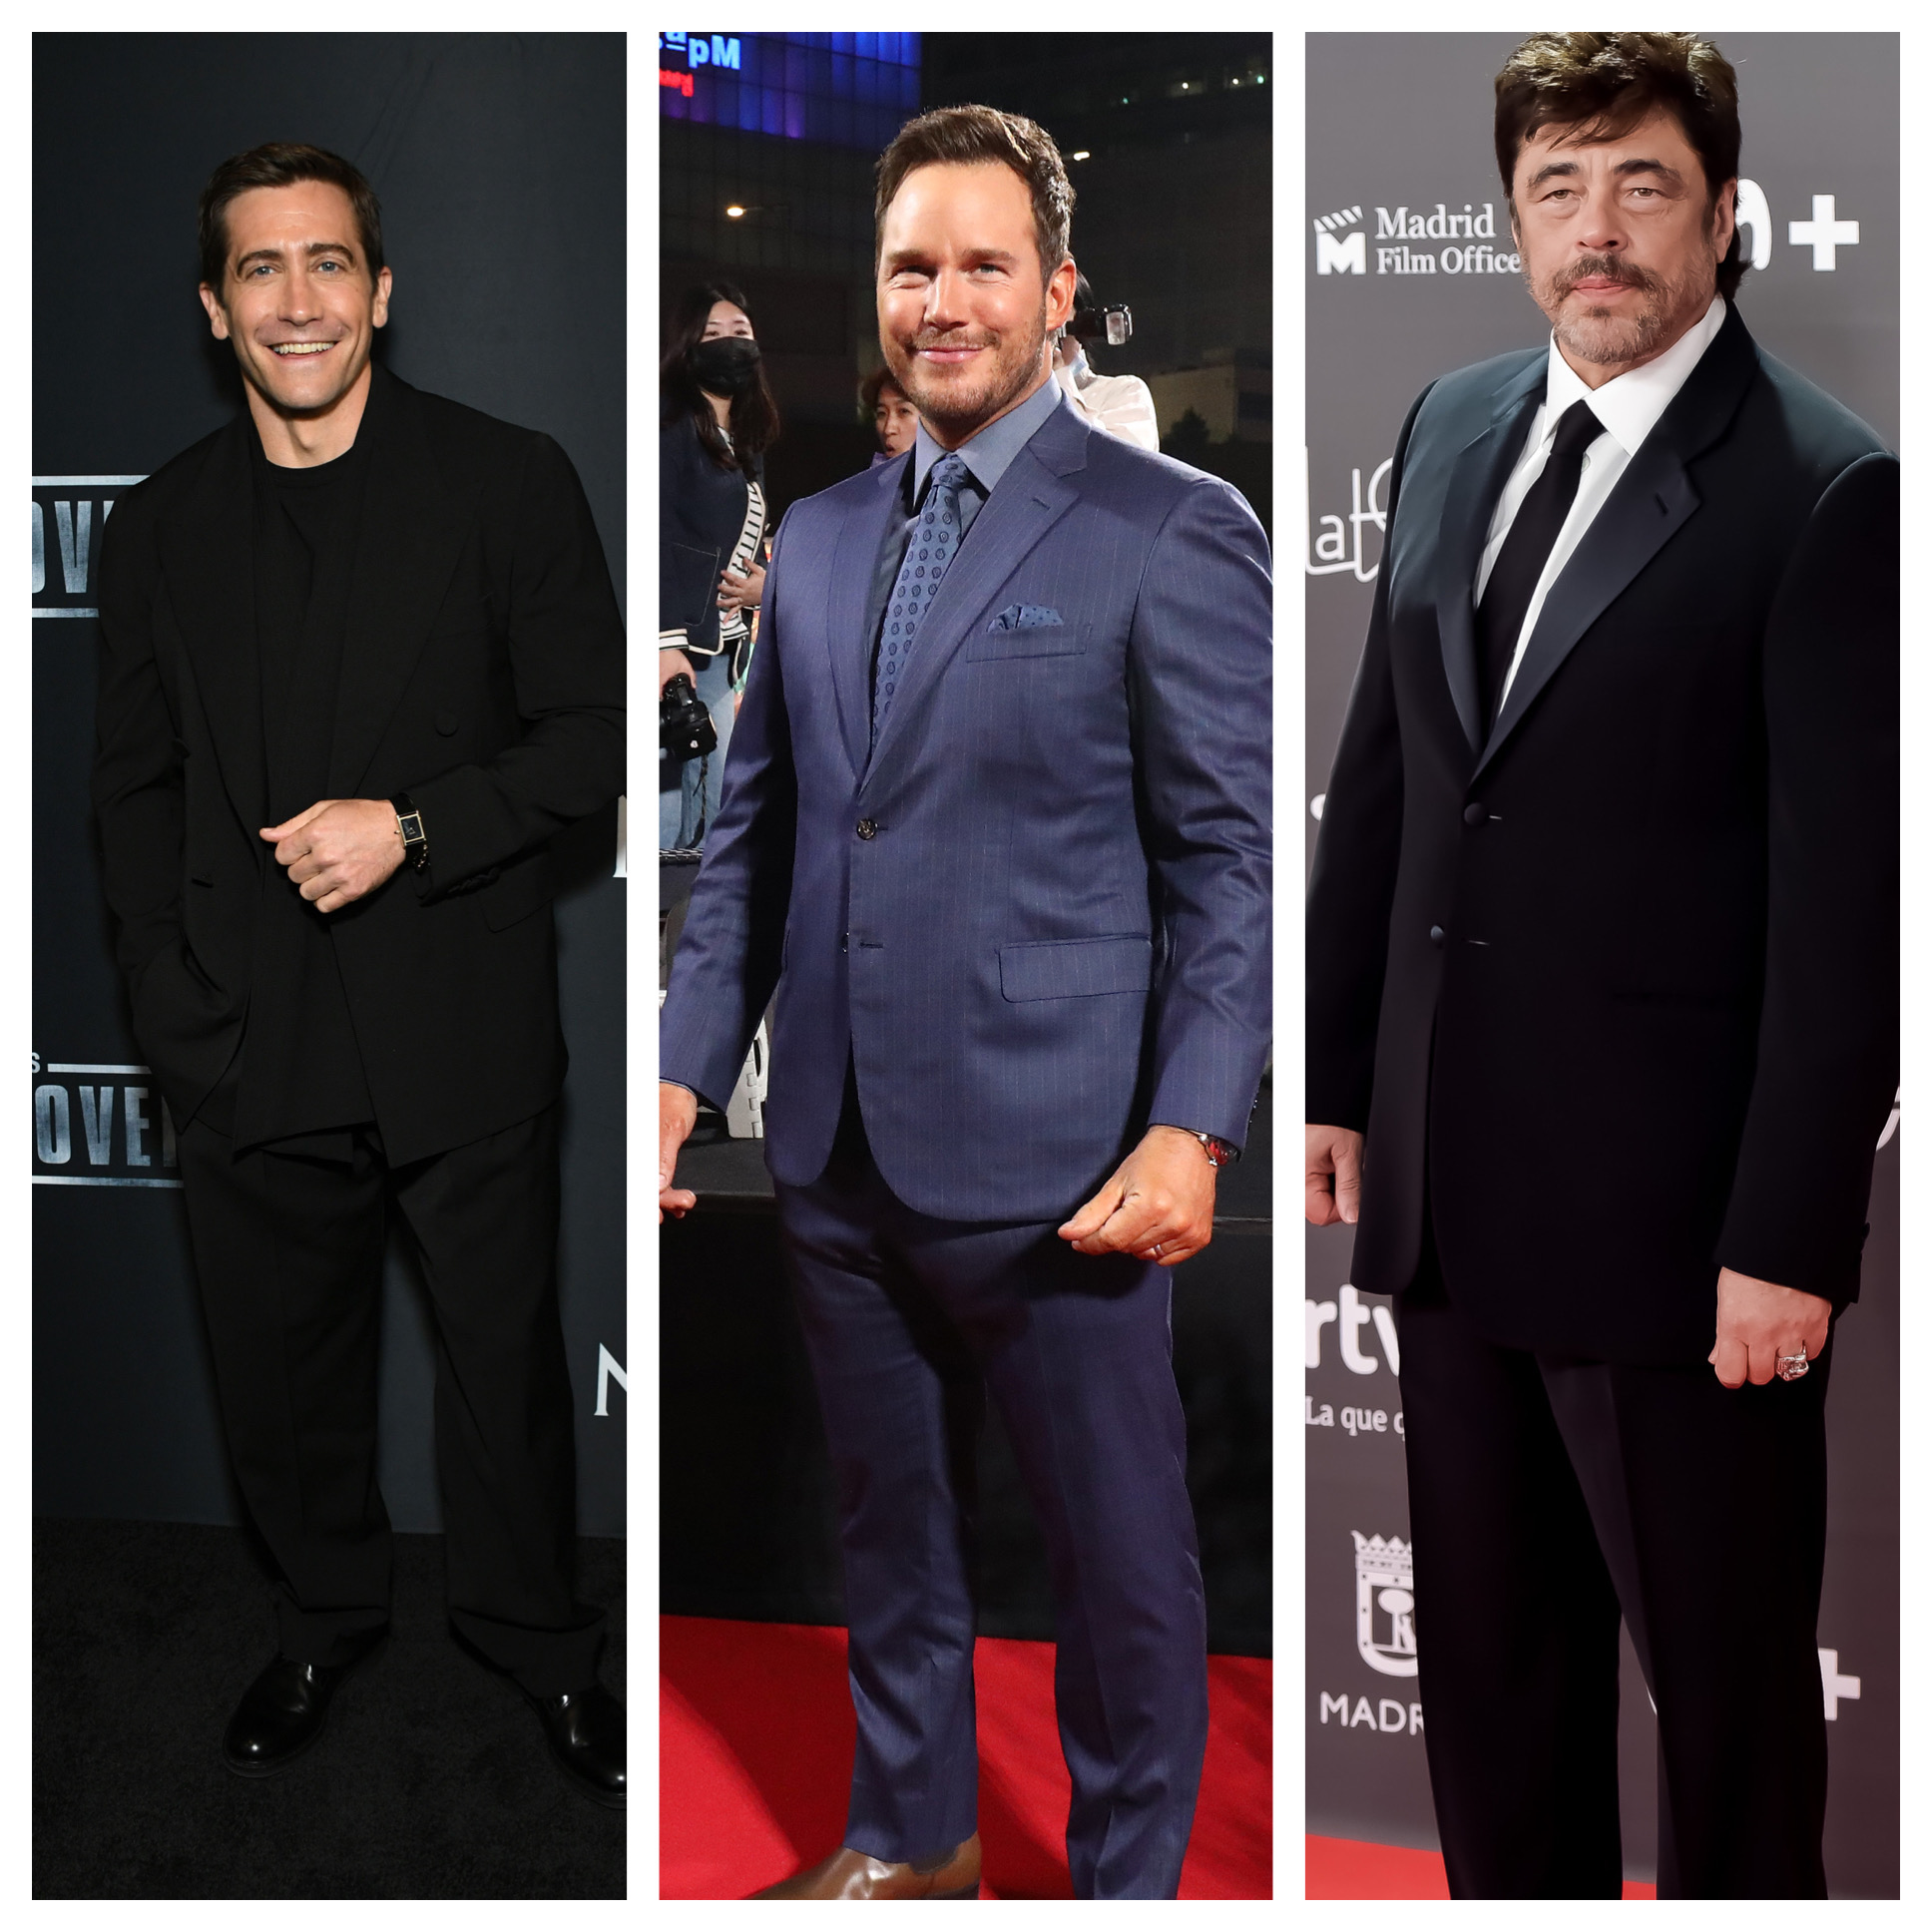 Jake Gyllenhaal, Chris Pratt, Benicio del Toro